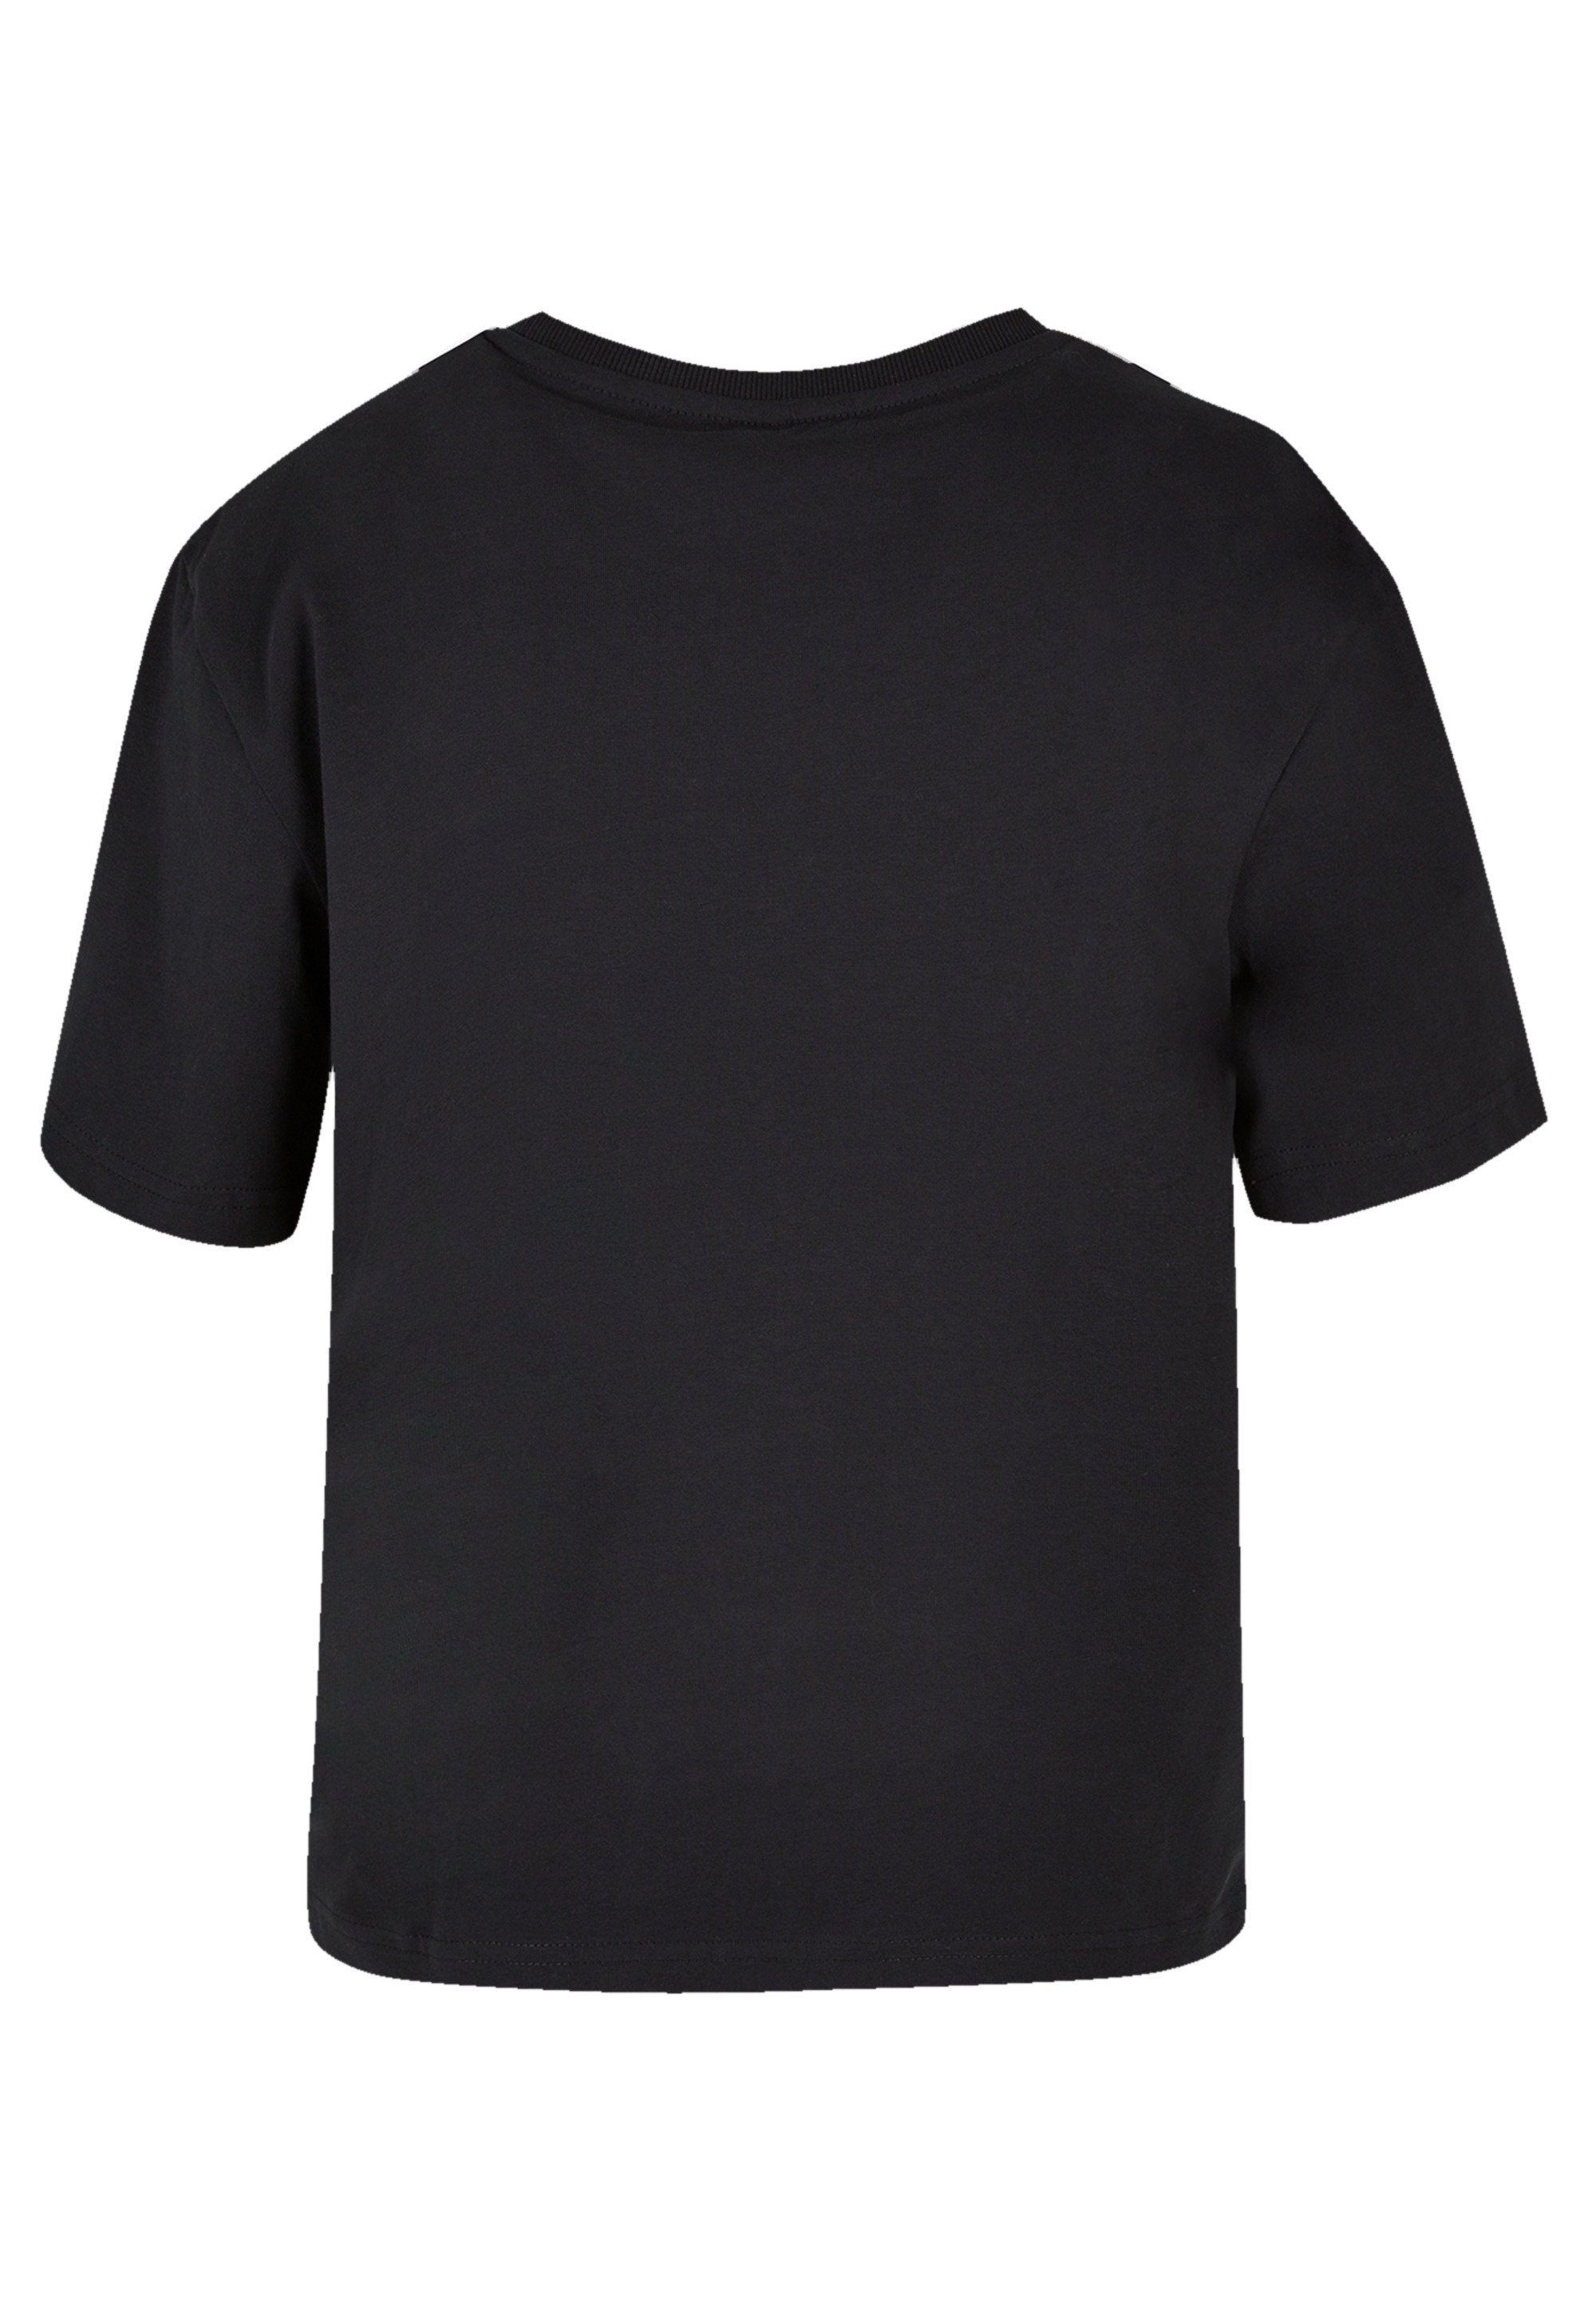 Premium Qualität, T-Shirt Spirit Disney Mulan kombinierbar und Komfortabel F4NT4STIC Bold vielseitig